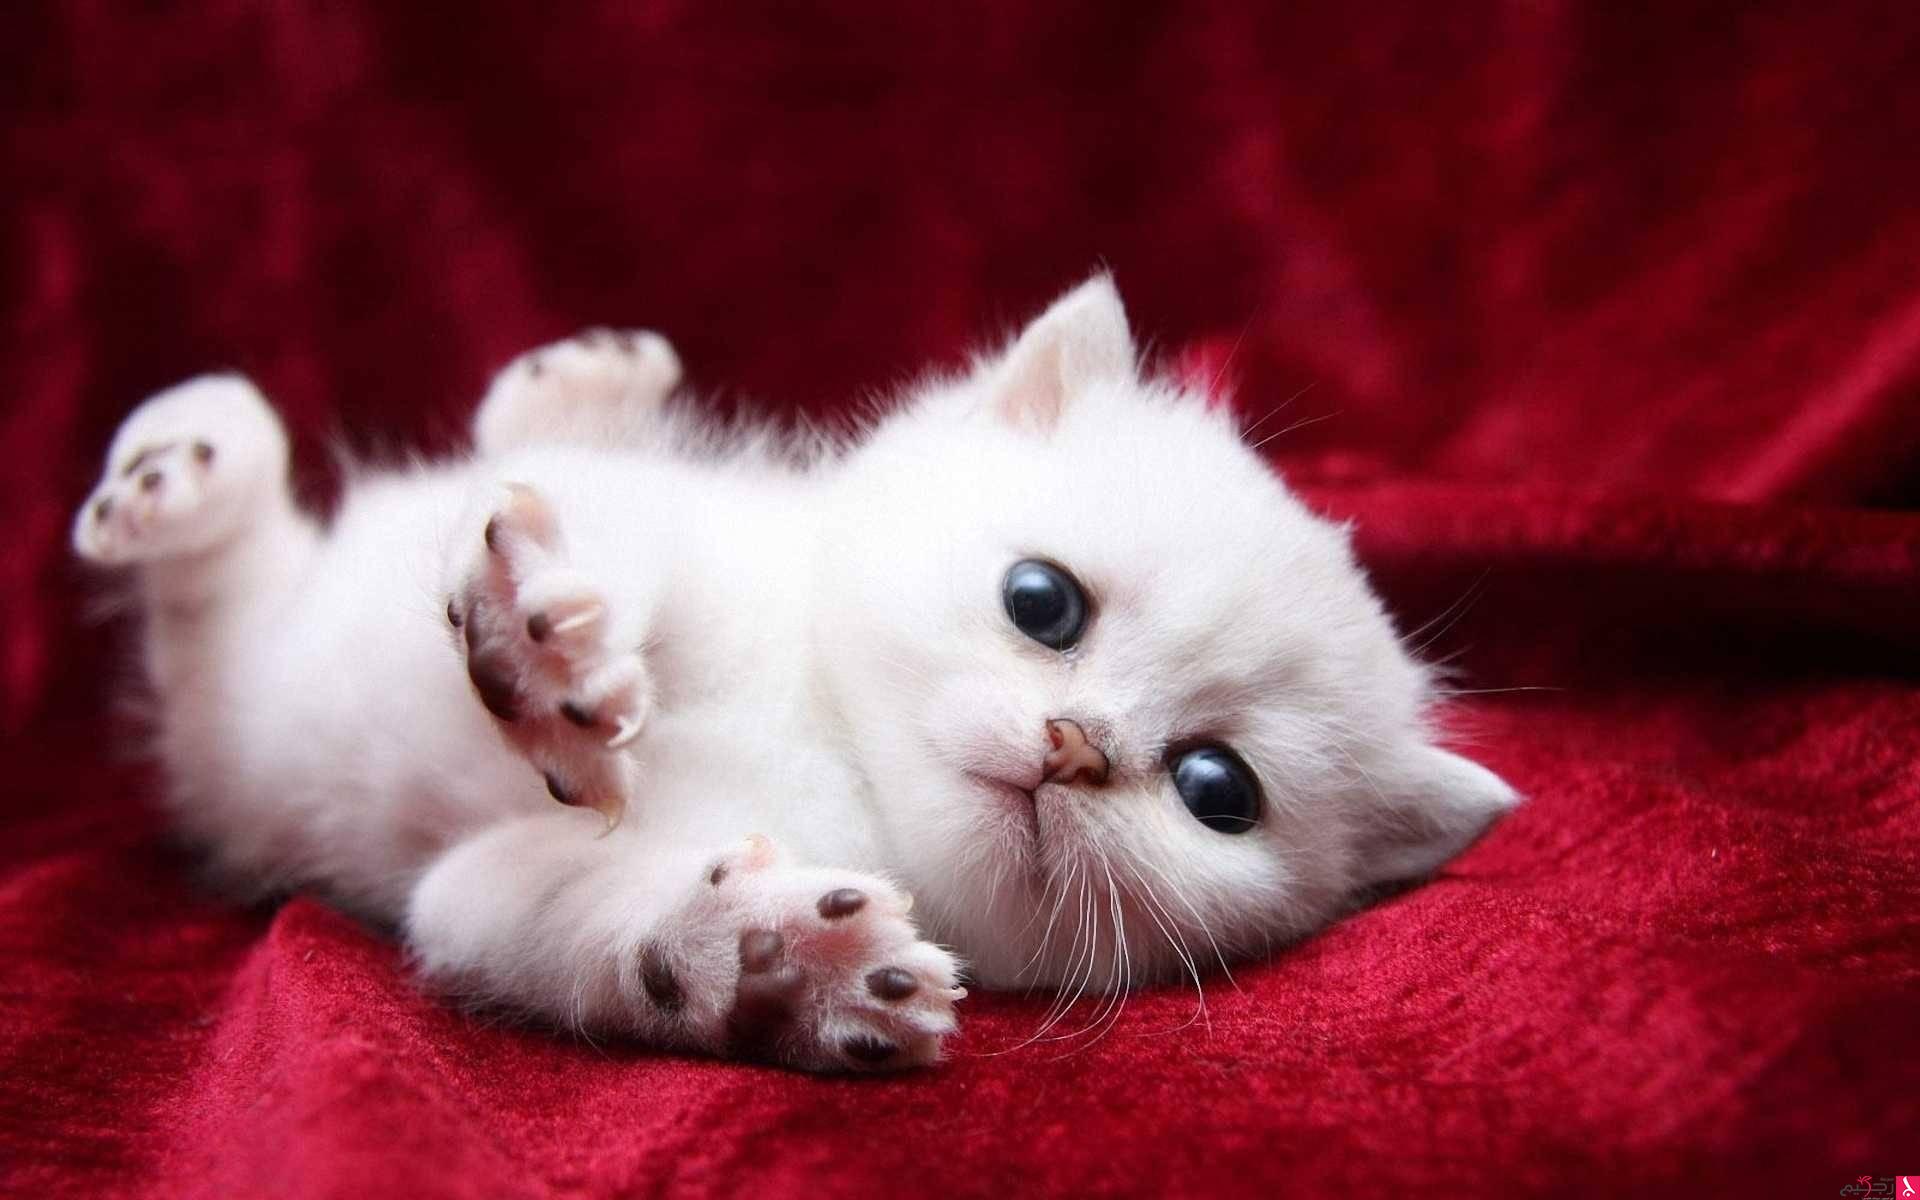  ♥مكتبة صور قـطط♥ - صفحة 63 320600-cats-cute-kitten